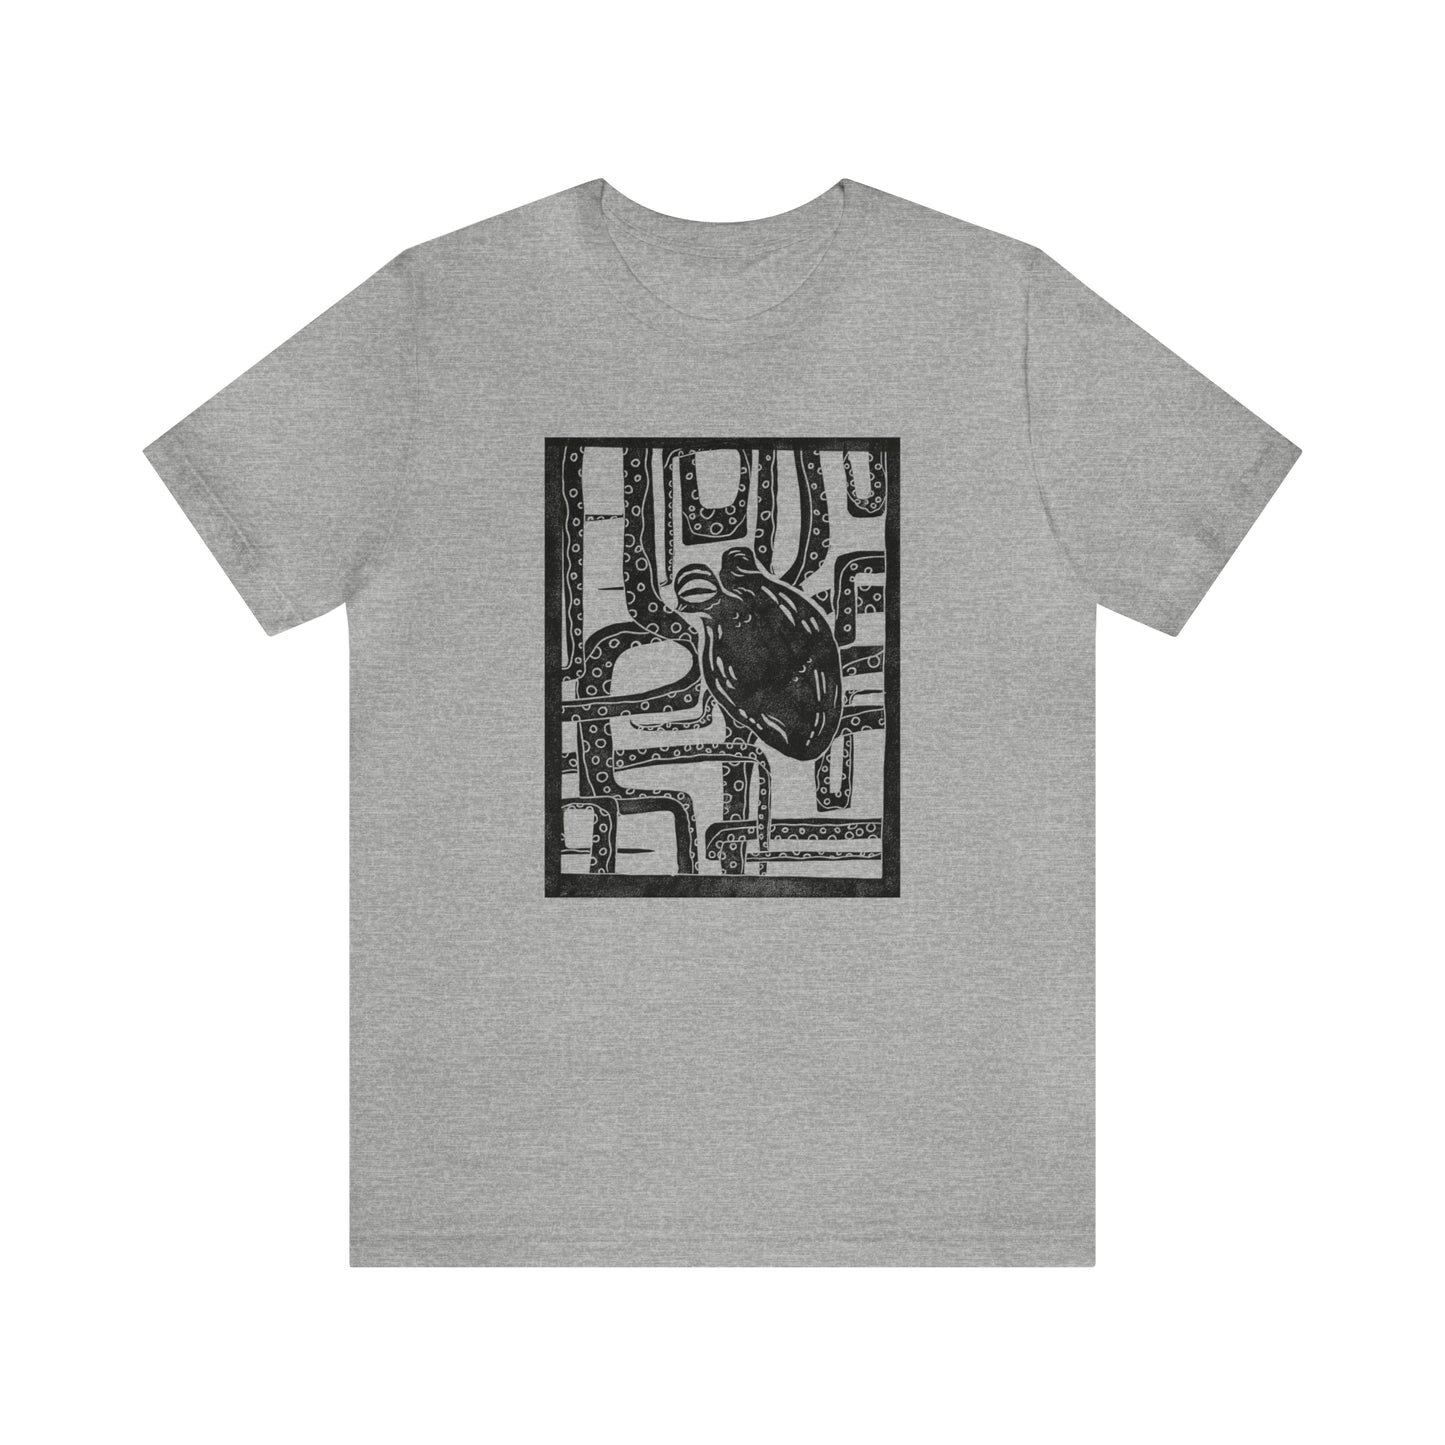 Unisex Crewneck Geometric Octopus T-Shirt - Bella + Canvas 3001 / Unique Nautical Graphic Tee